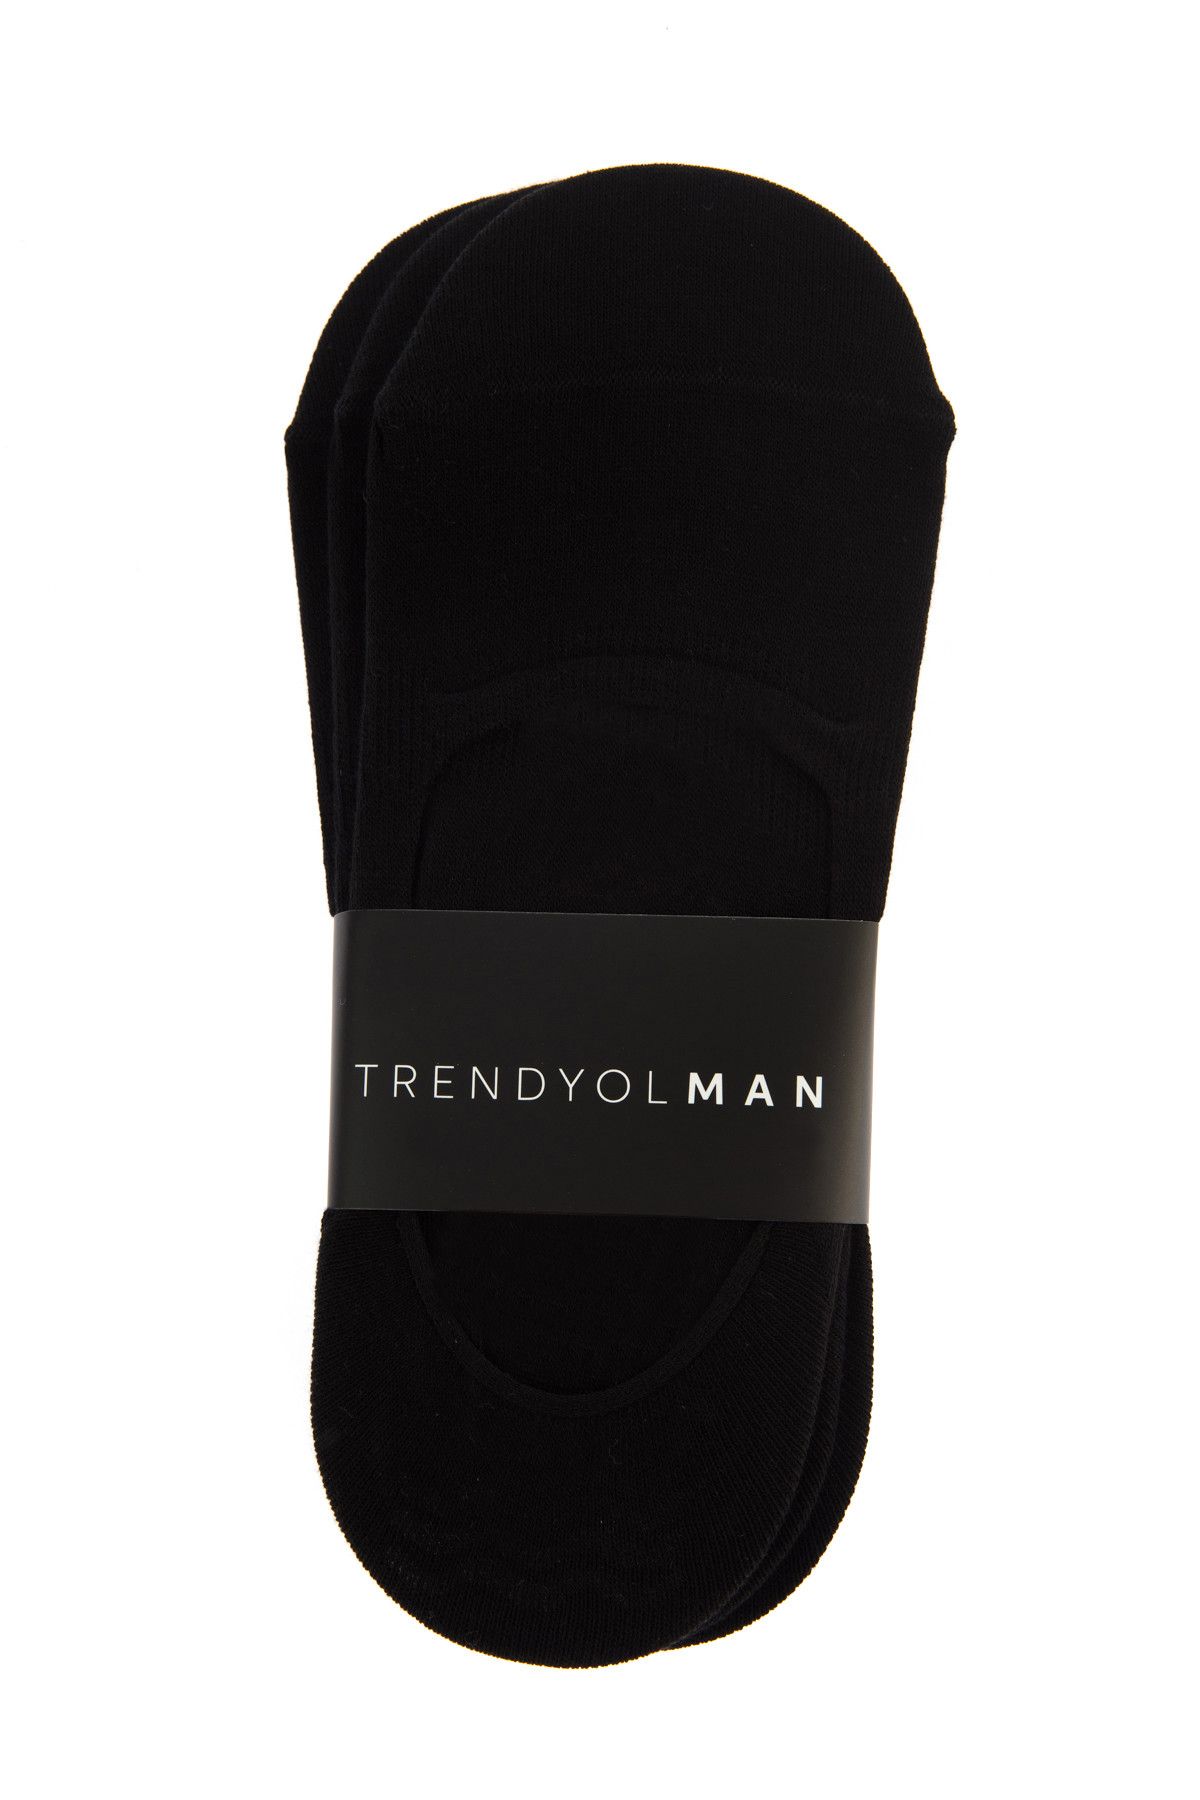 TRENDYOL MAN Siyah Erkek Çorap - 3'Lü Paket Suba